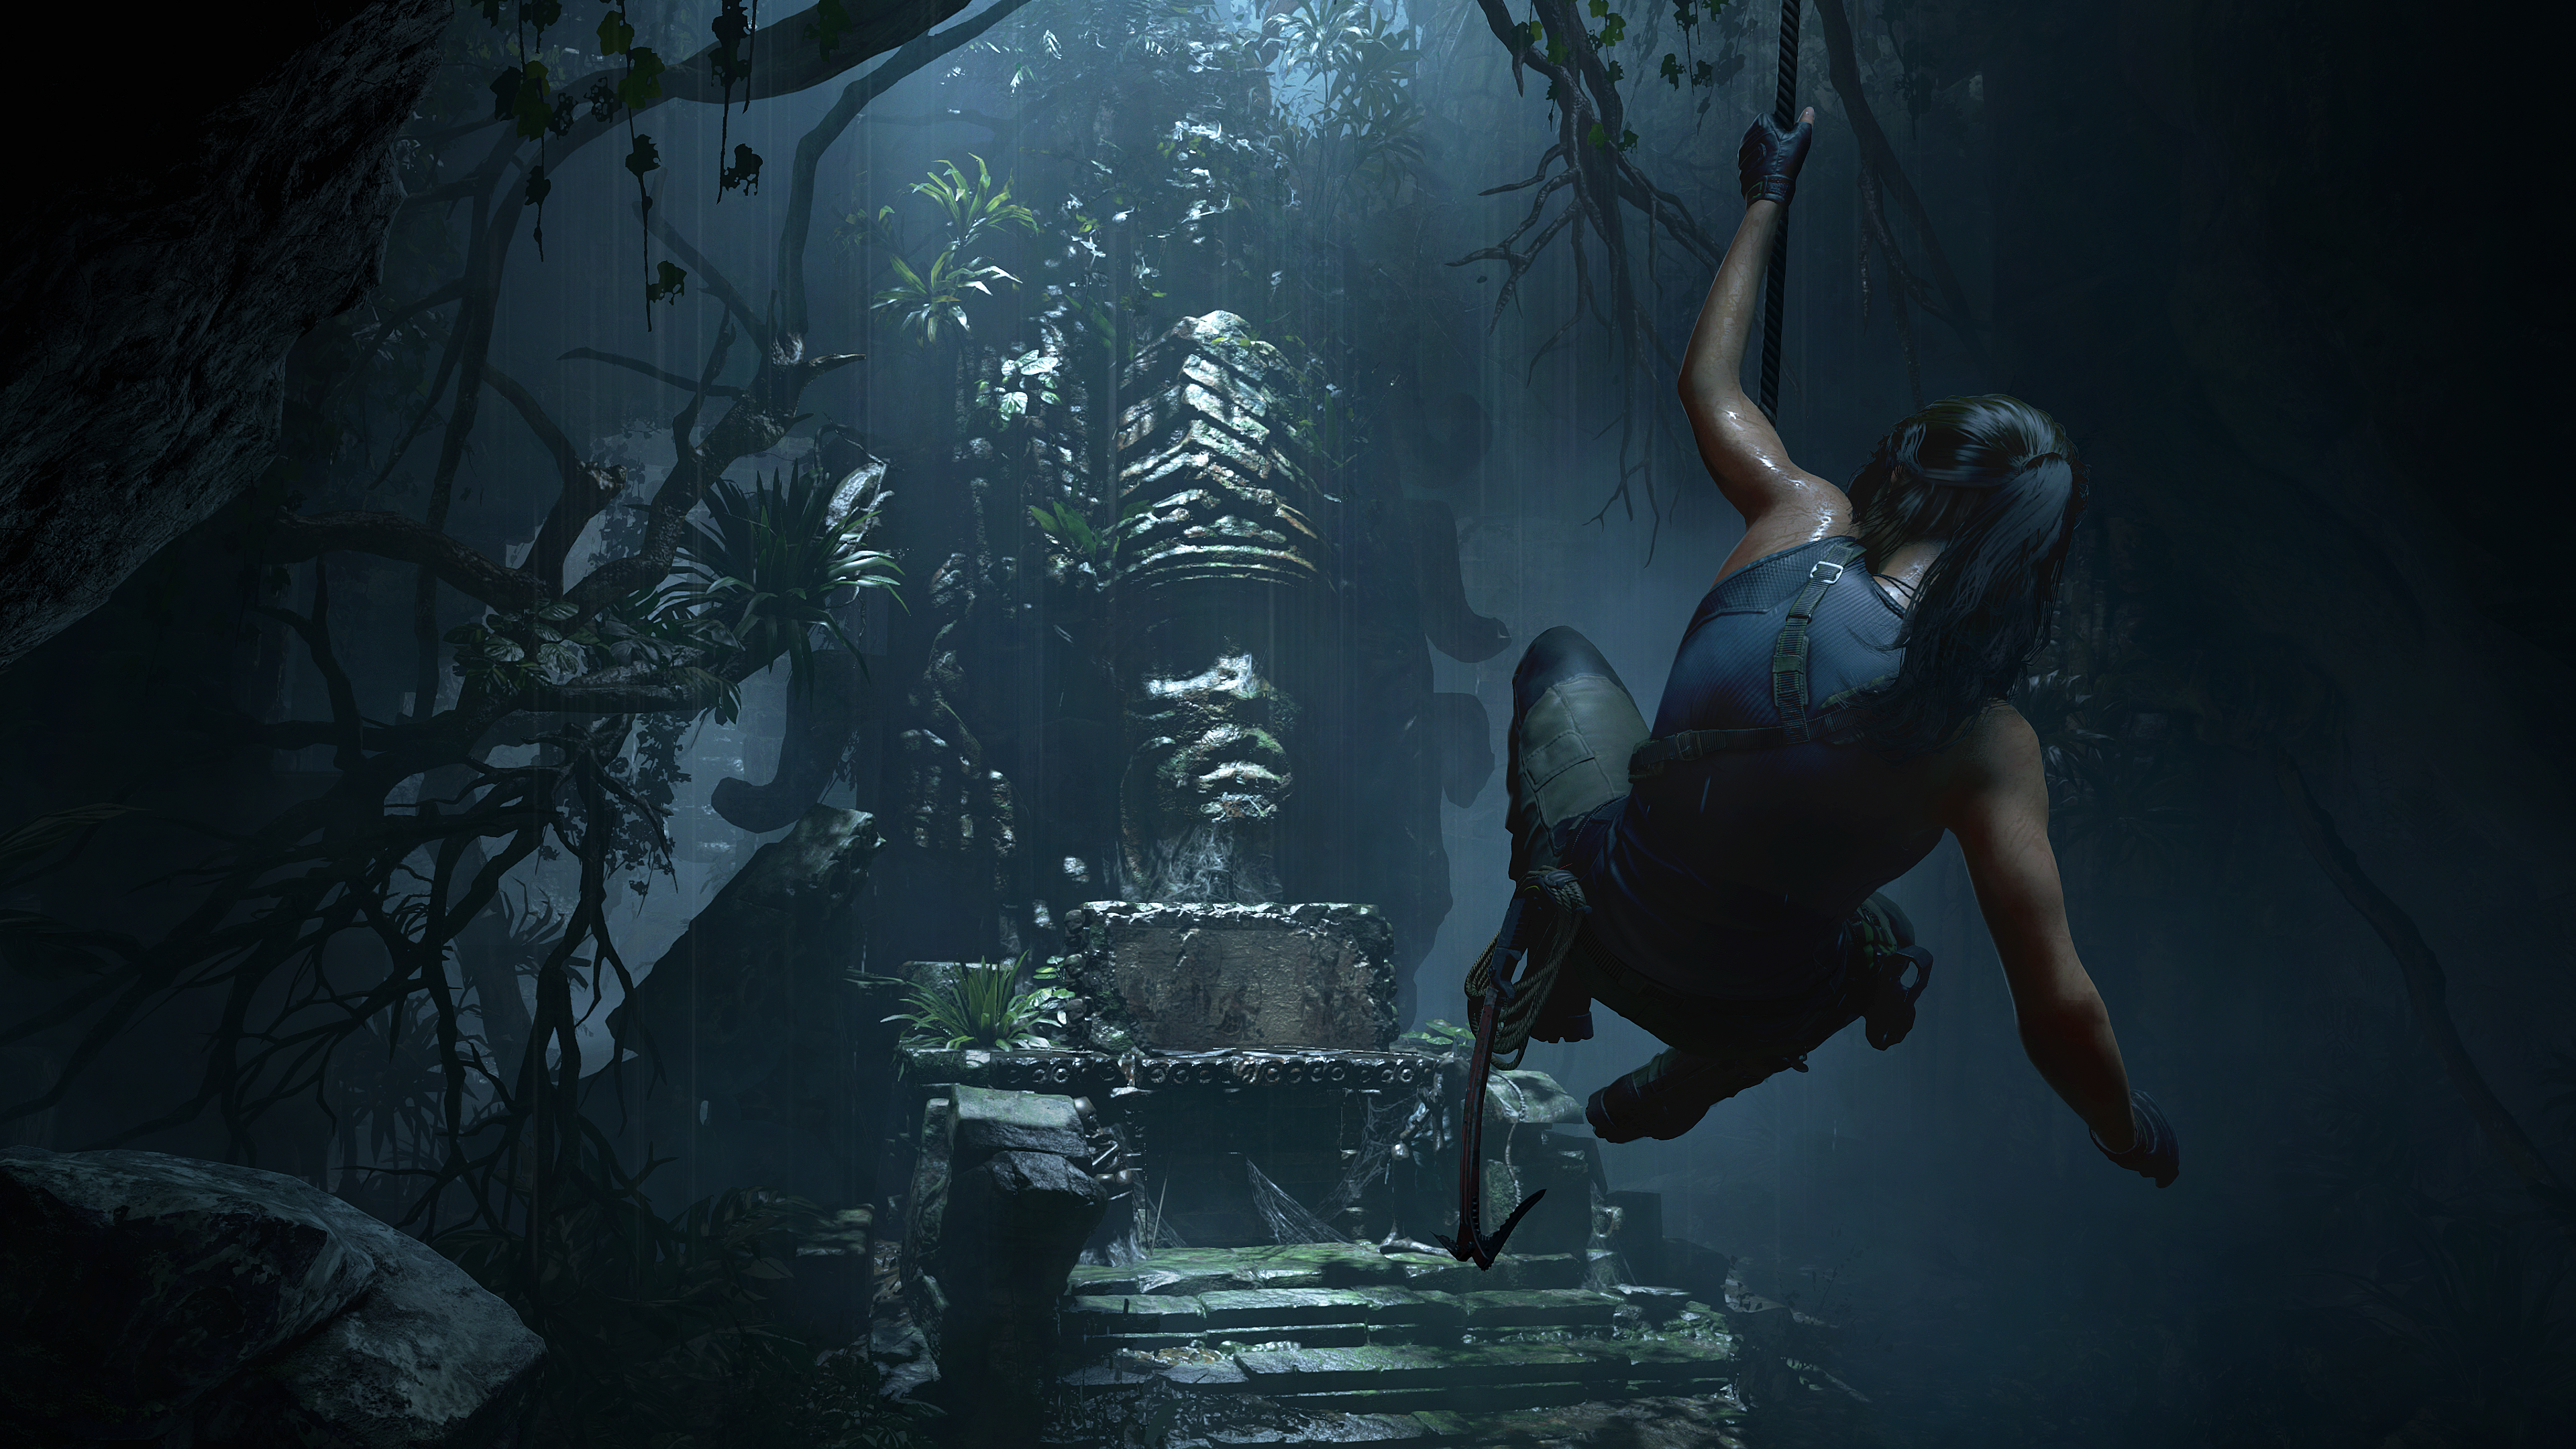 Immagine pubblicata in relazione al seguente contenuto: Nuovi gameplay trailers e screenshots del game Shadow of the Tomb Raider | Nome immagine: news28511_Shadow-of-the-Tomb-Raider-Screenshot_1.jpg